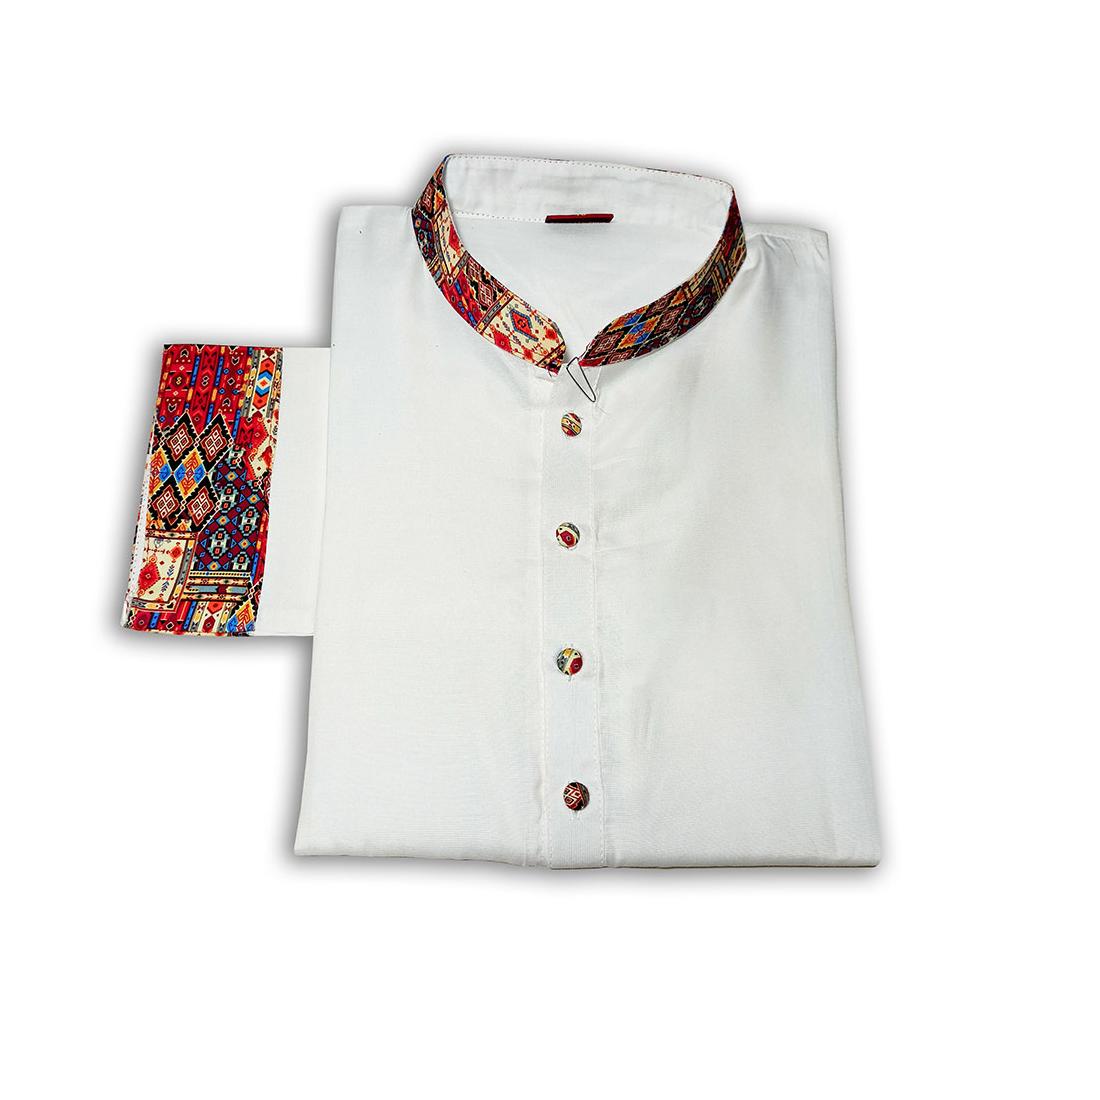 Peswary-Cotton-Half-Contest-Print-Punjabi-White-red-SKU-1248-2-jpg-suptadhara-product-1711656702.jpg